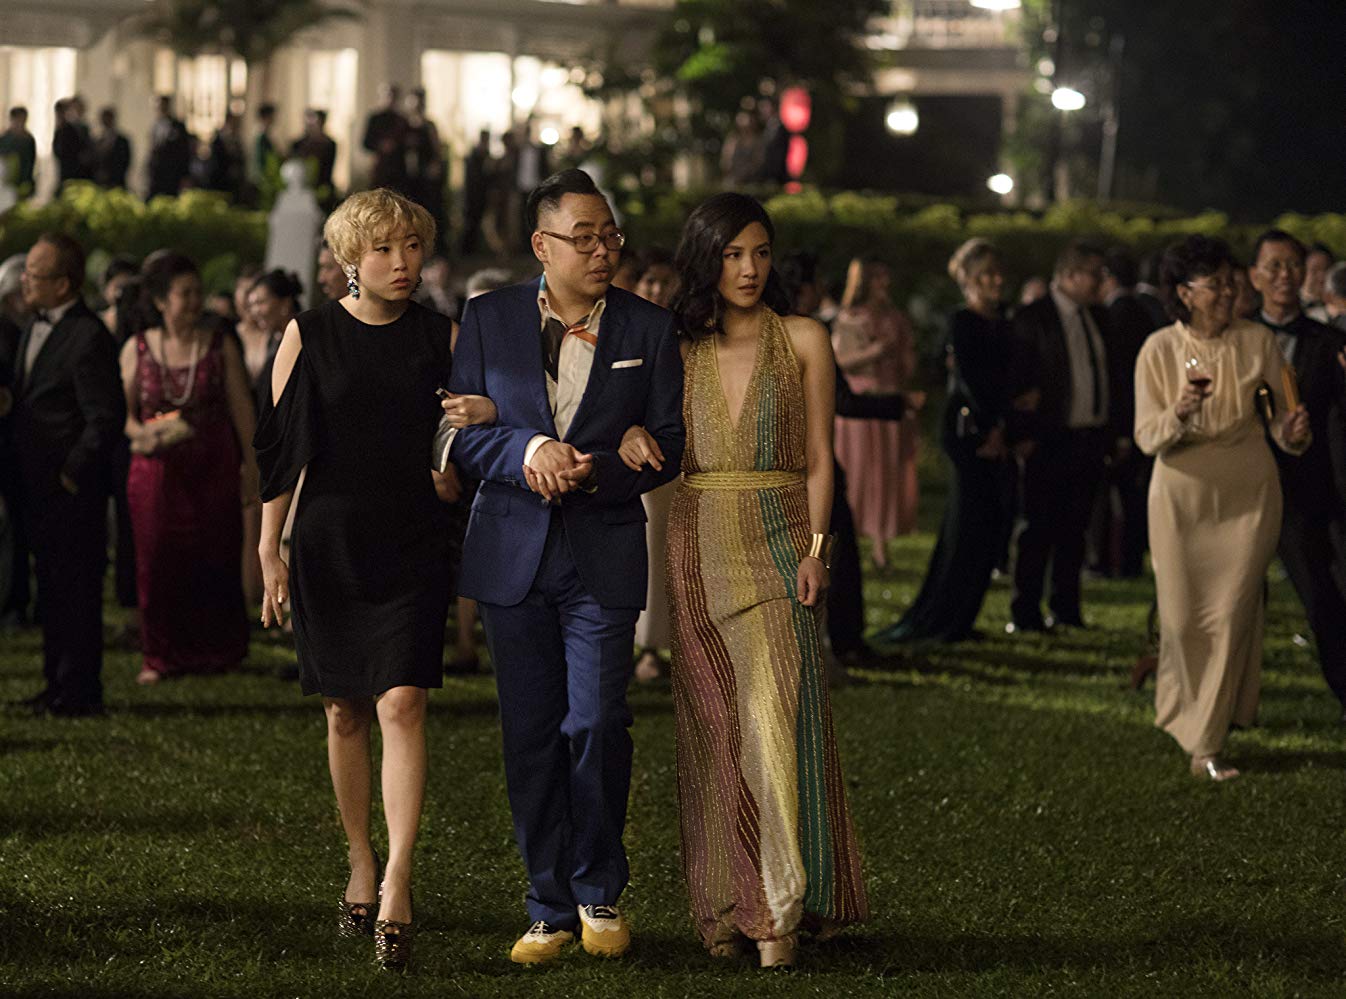 Crazy Rich Asians, la película que debes ver si eres amante de la moda